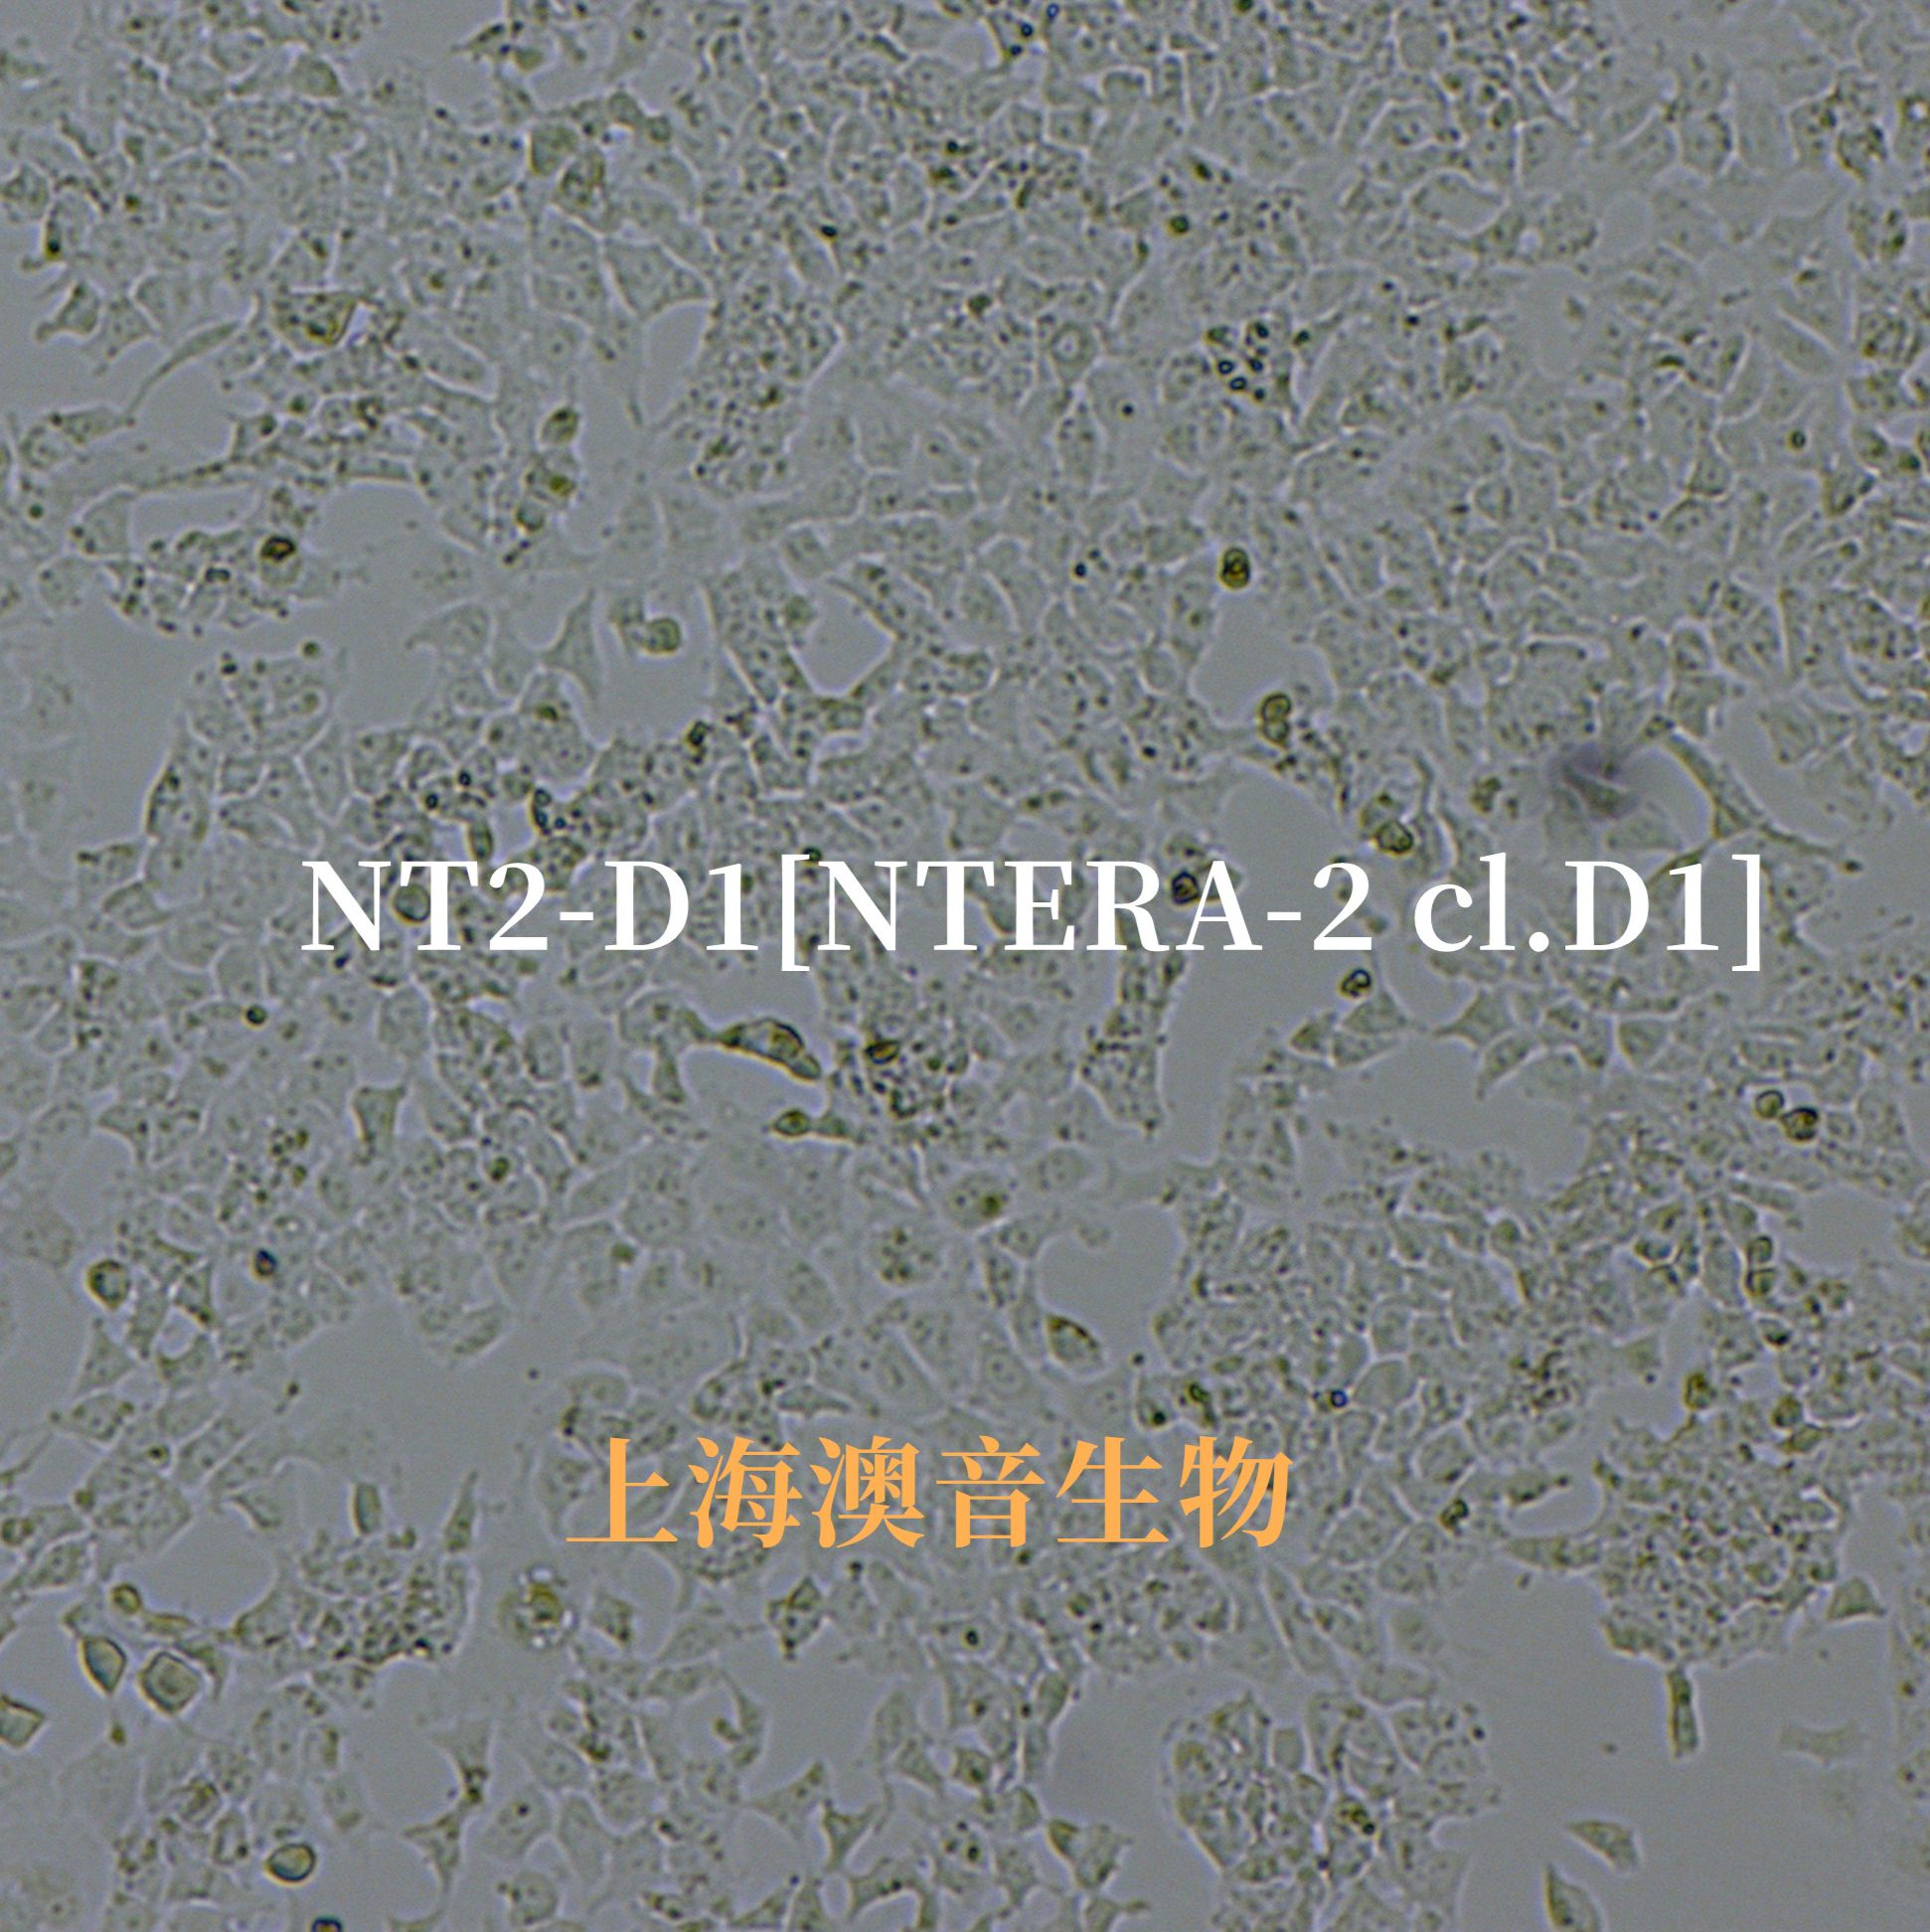 NT2-D1[NTERA-2 cl.D1;NT2/D1; NT2D1; Nt2D1; NTERA-2 clone D1; NTERA2-cloneD1; NTERA-2 cl.D1; NTera2 cl.D1; NTERA-2cl.D1; NTera 2/cl.D1; NTERA2CLD1; NTERA-2/D1; NTera2/D1; NTERA2-D1